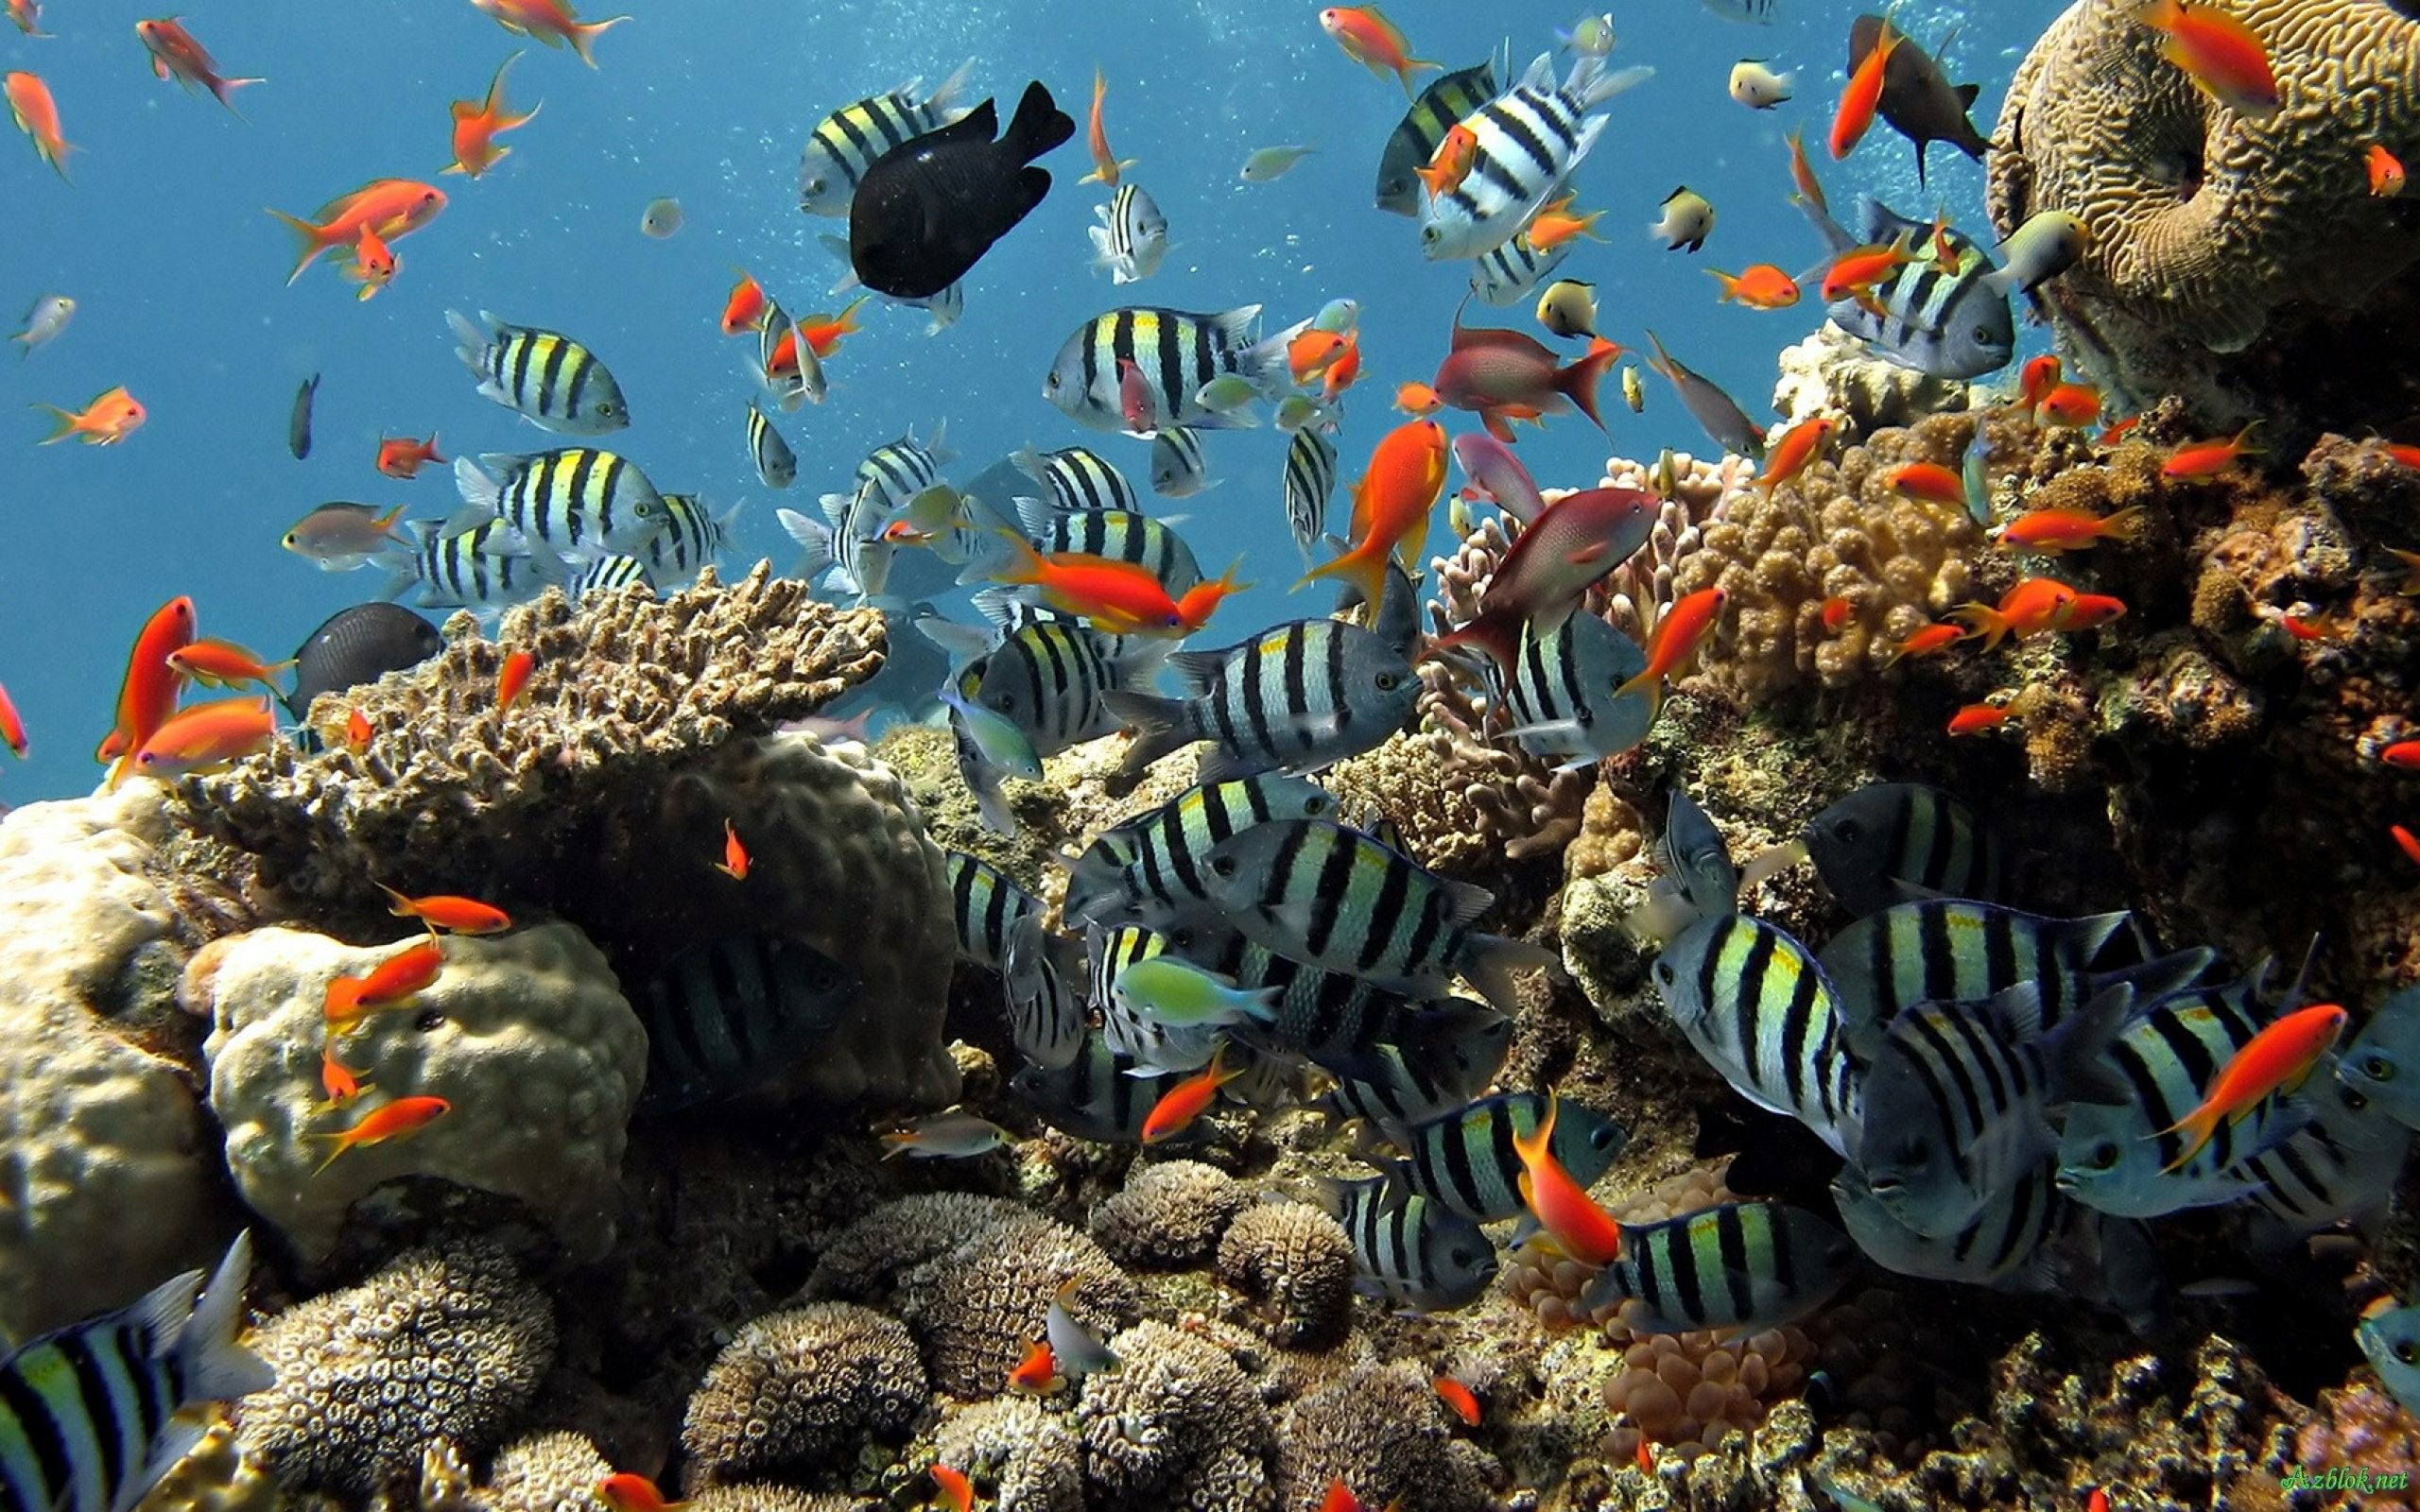 3D live wallpaper hd, reef, coral reef, coral reef fish, underwater, marine biology